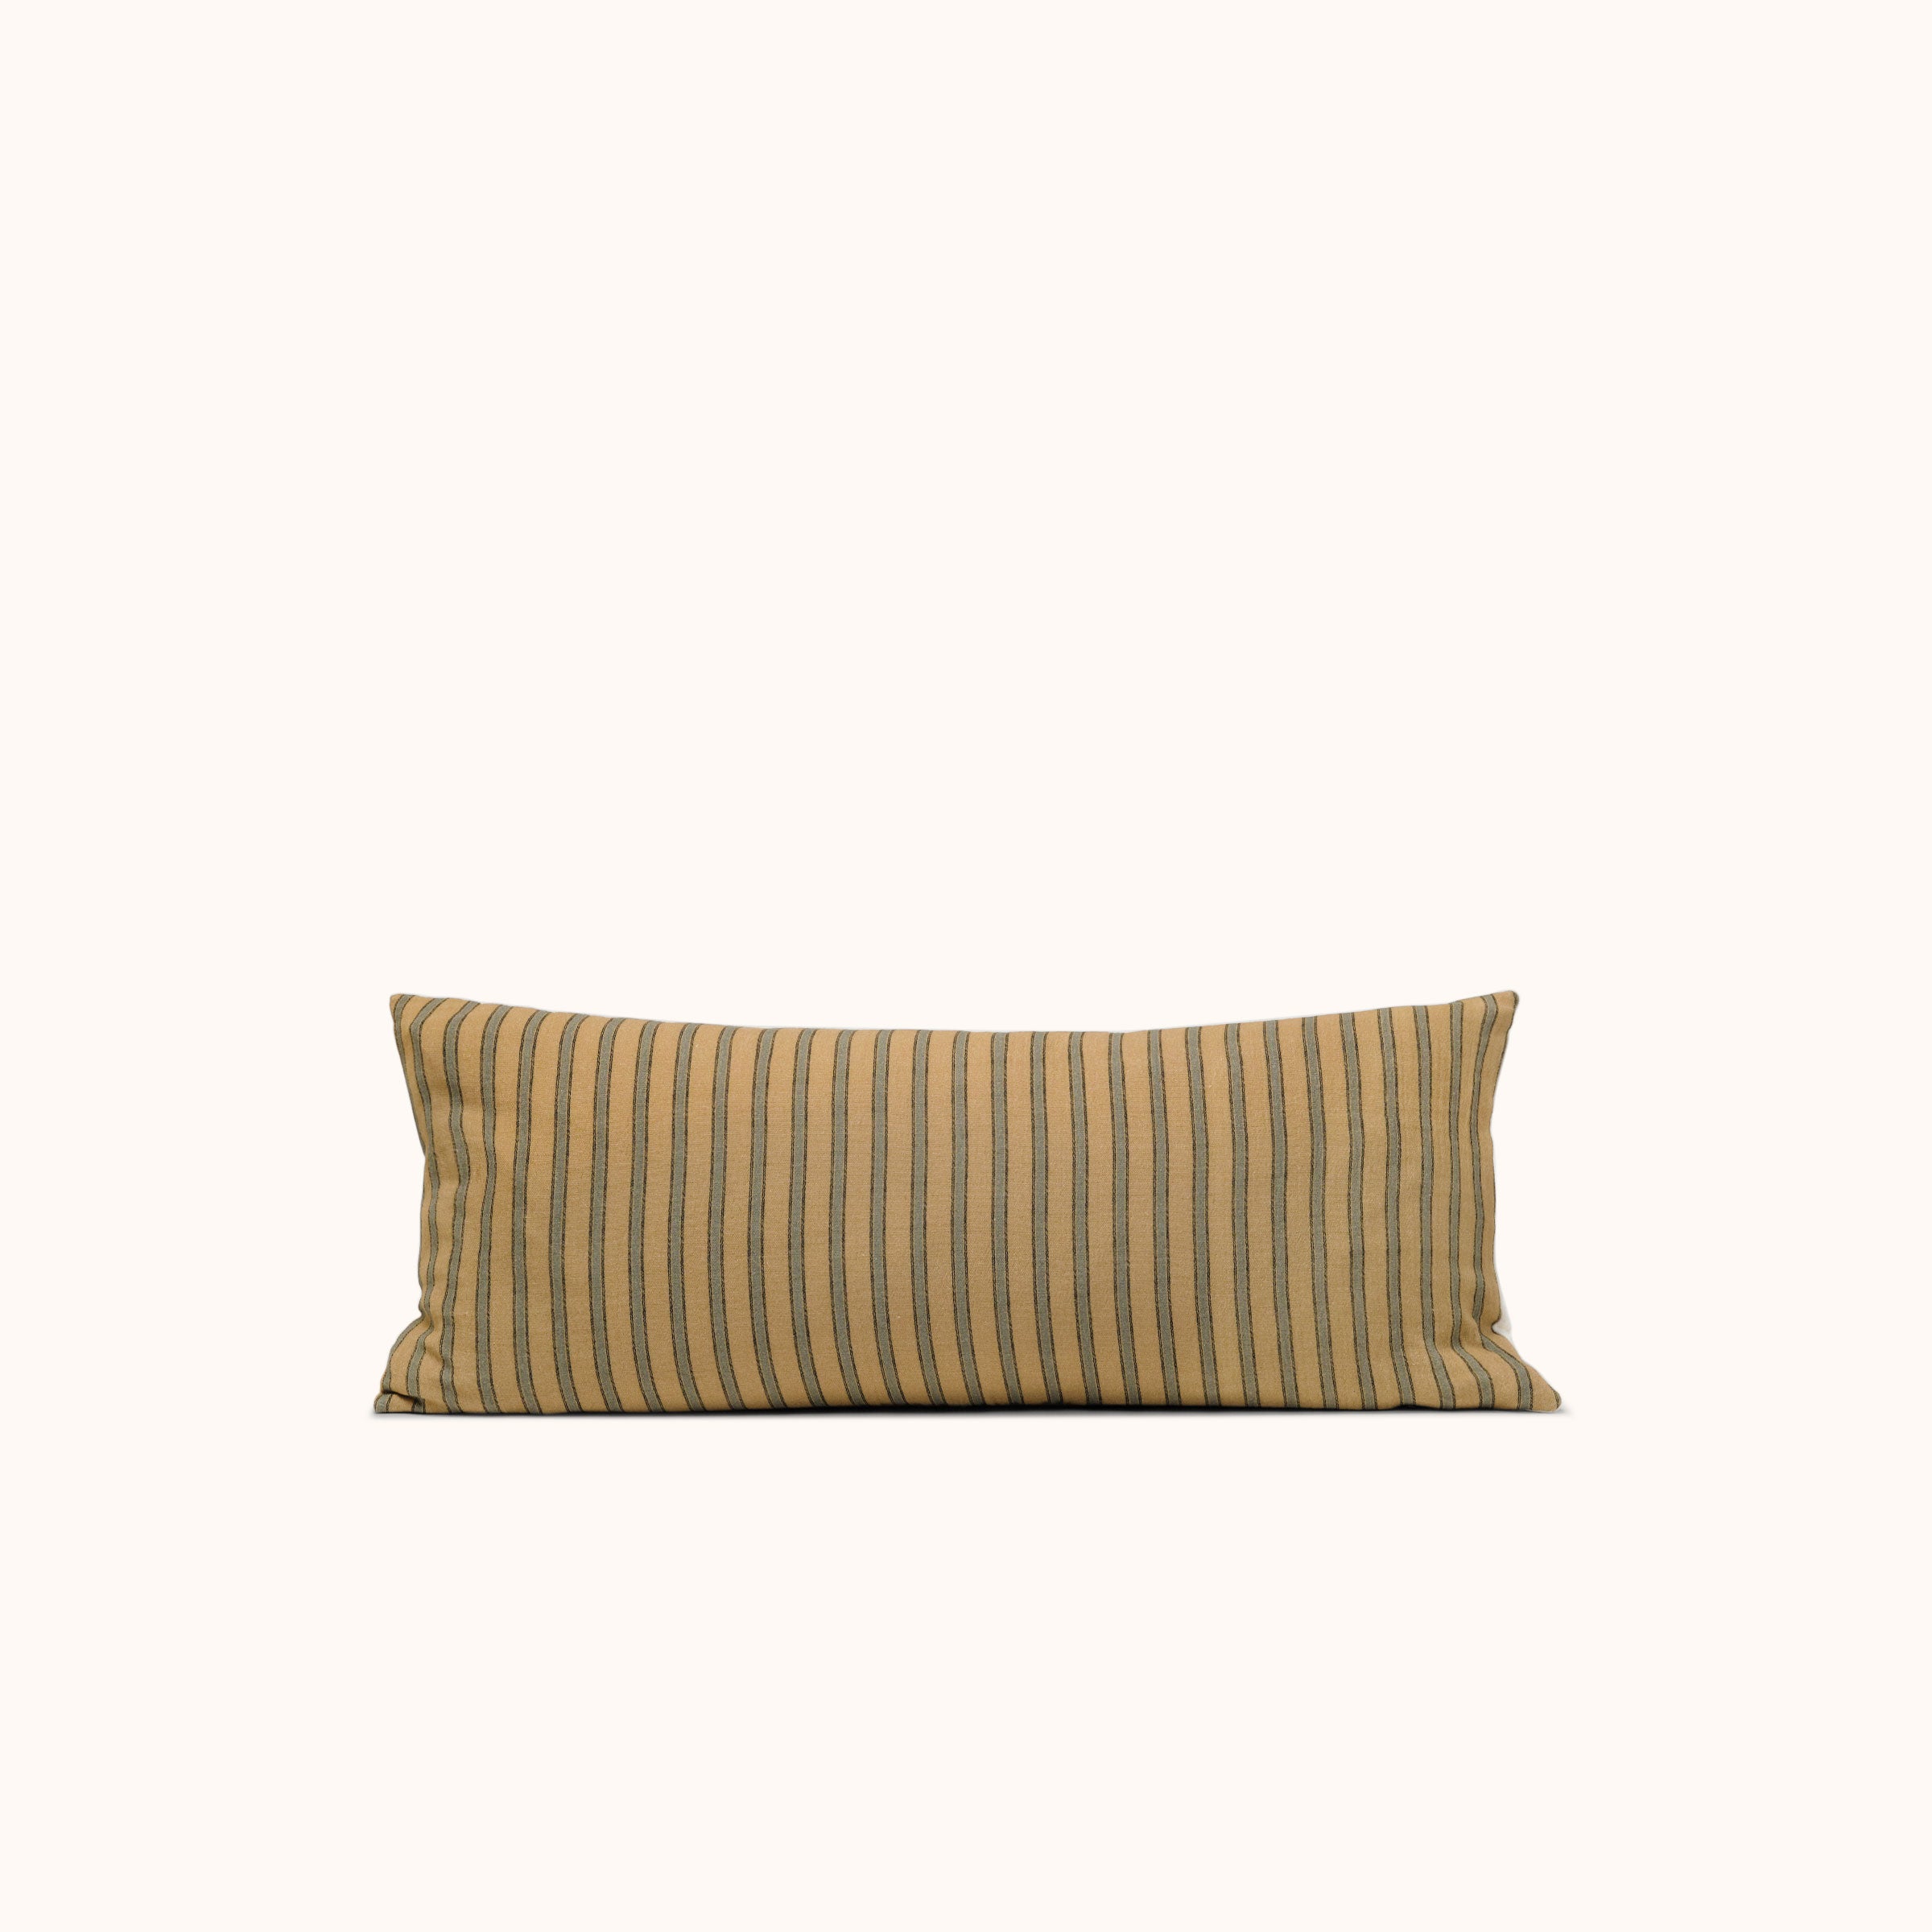 Striped Lumbar Pillow at